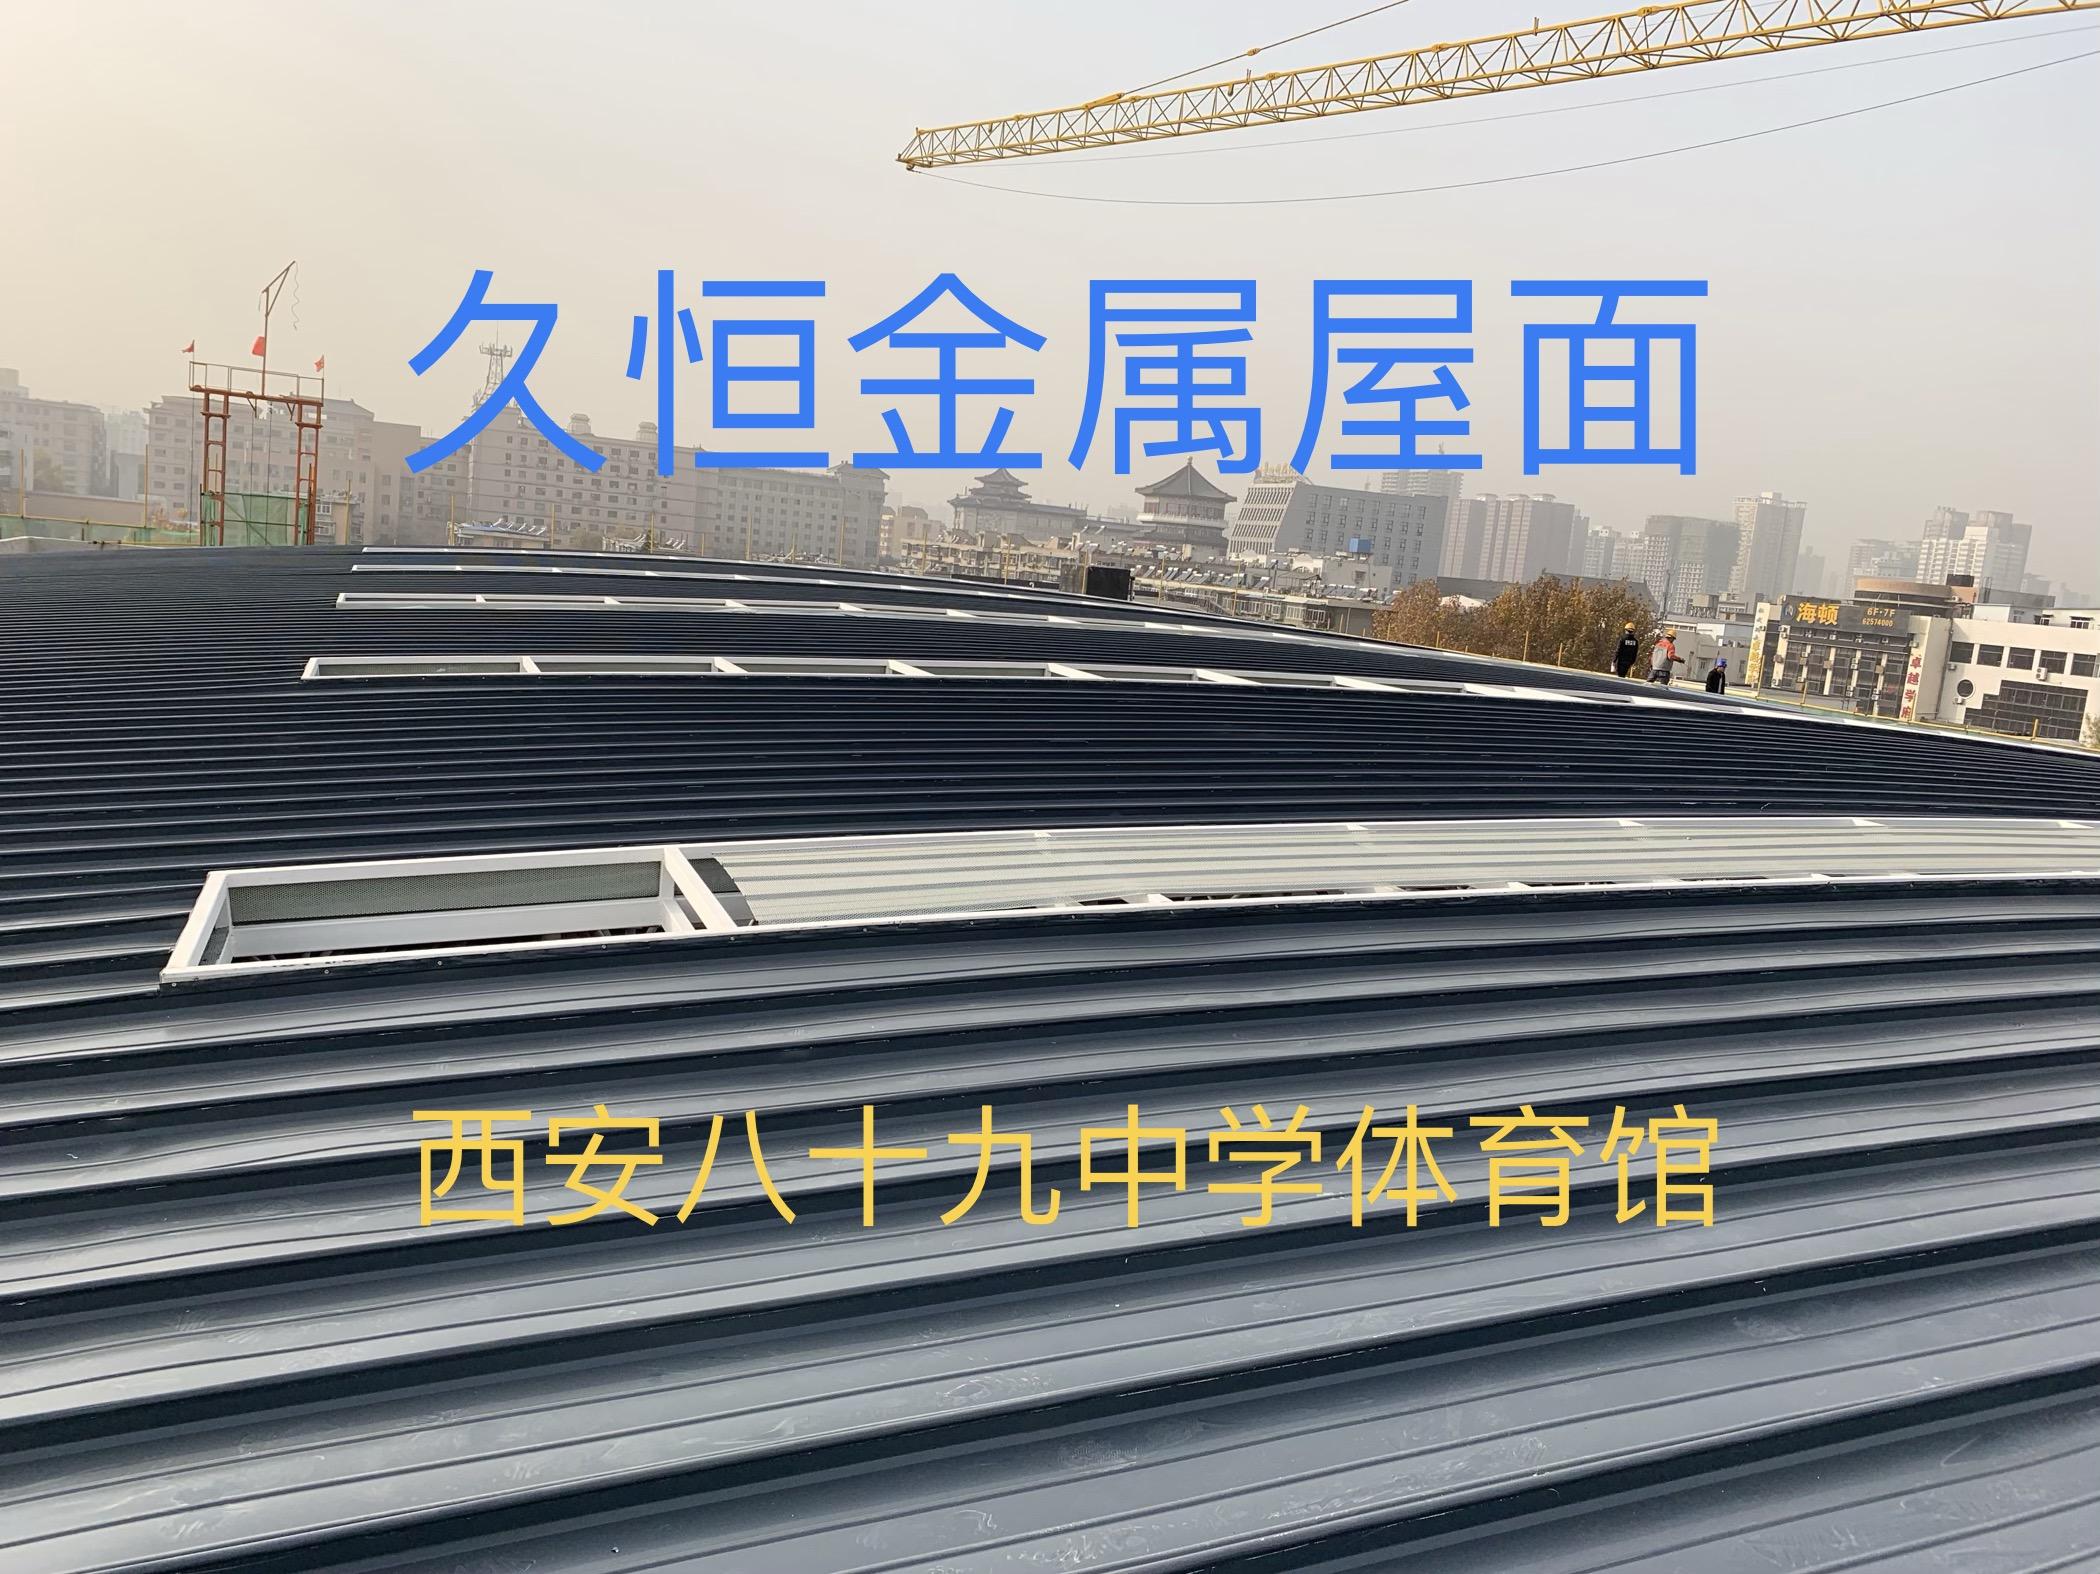 供应许昌市65-430型0.9mm厚铝镁锰合金屋面板